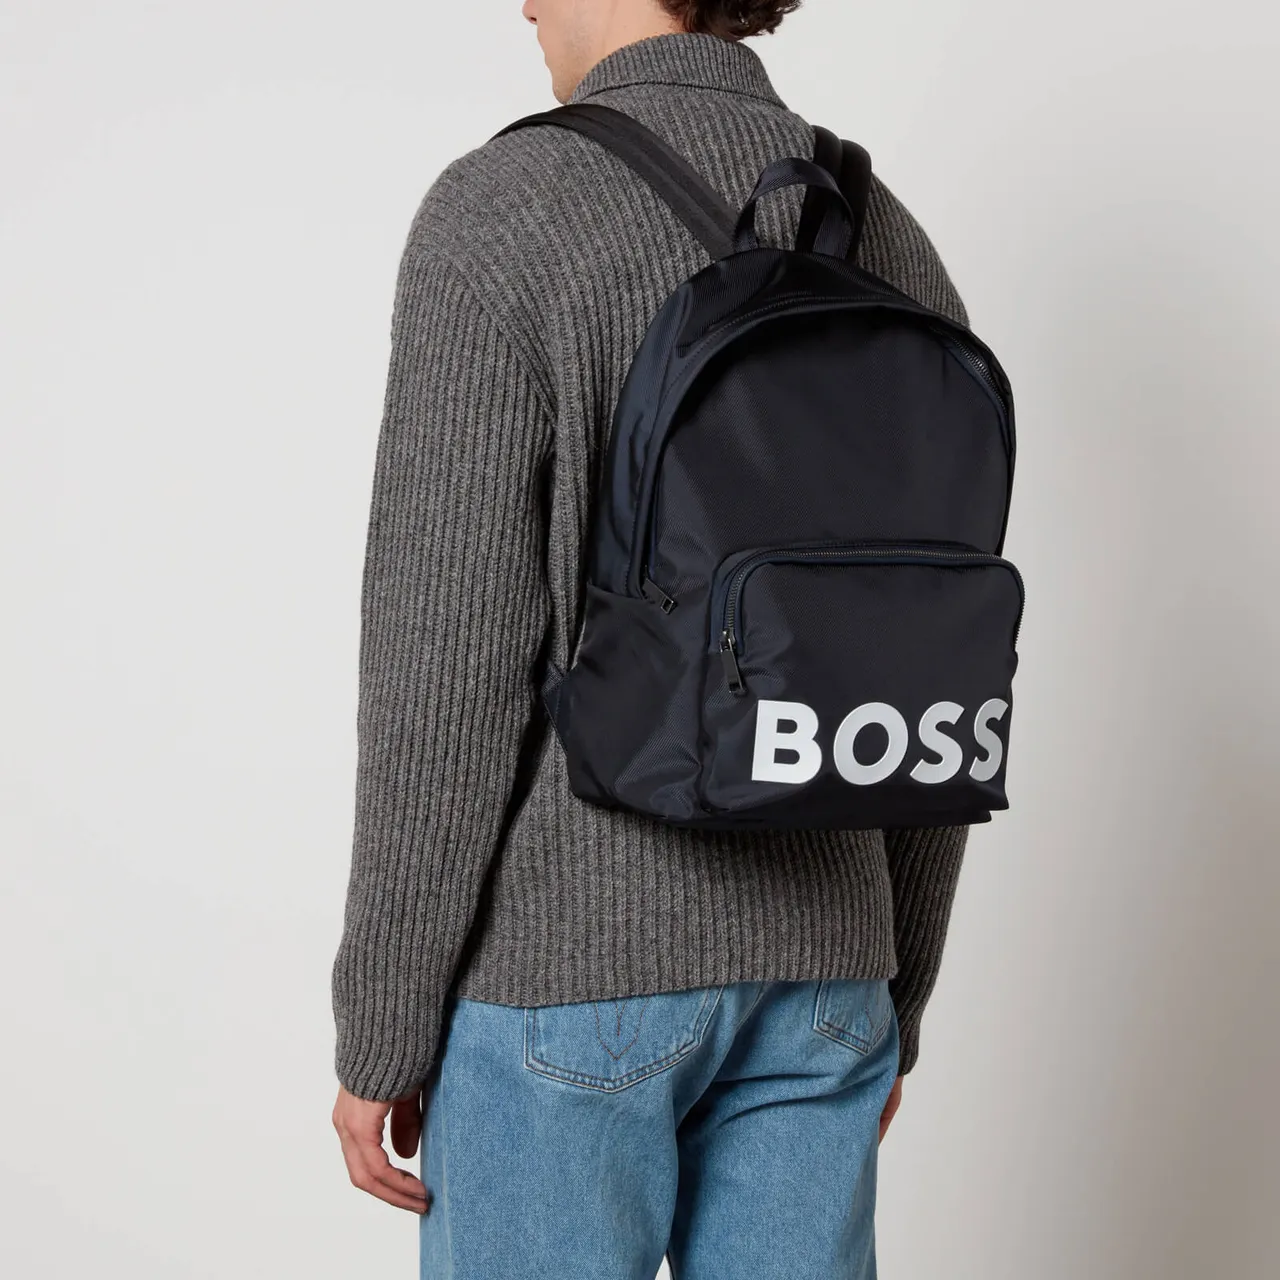 BOSS Black Nylon Catch Backpack